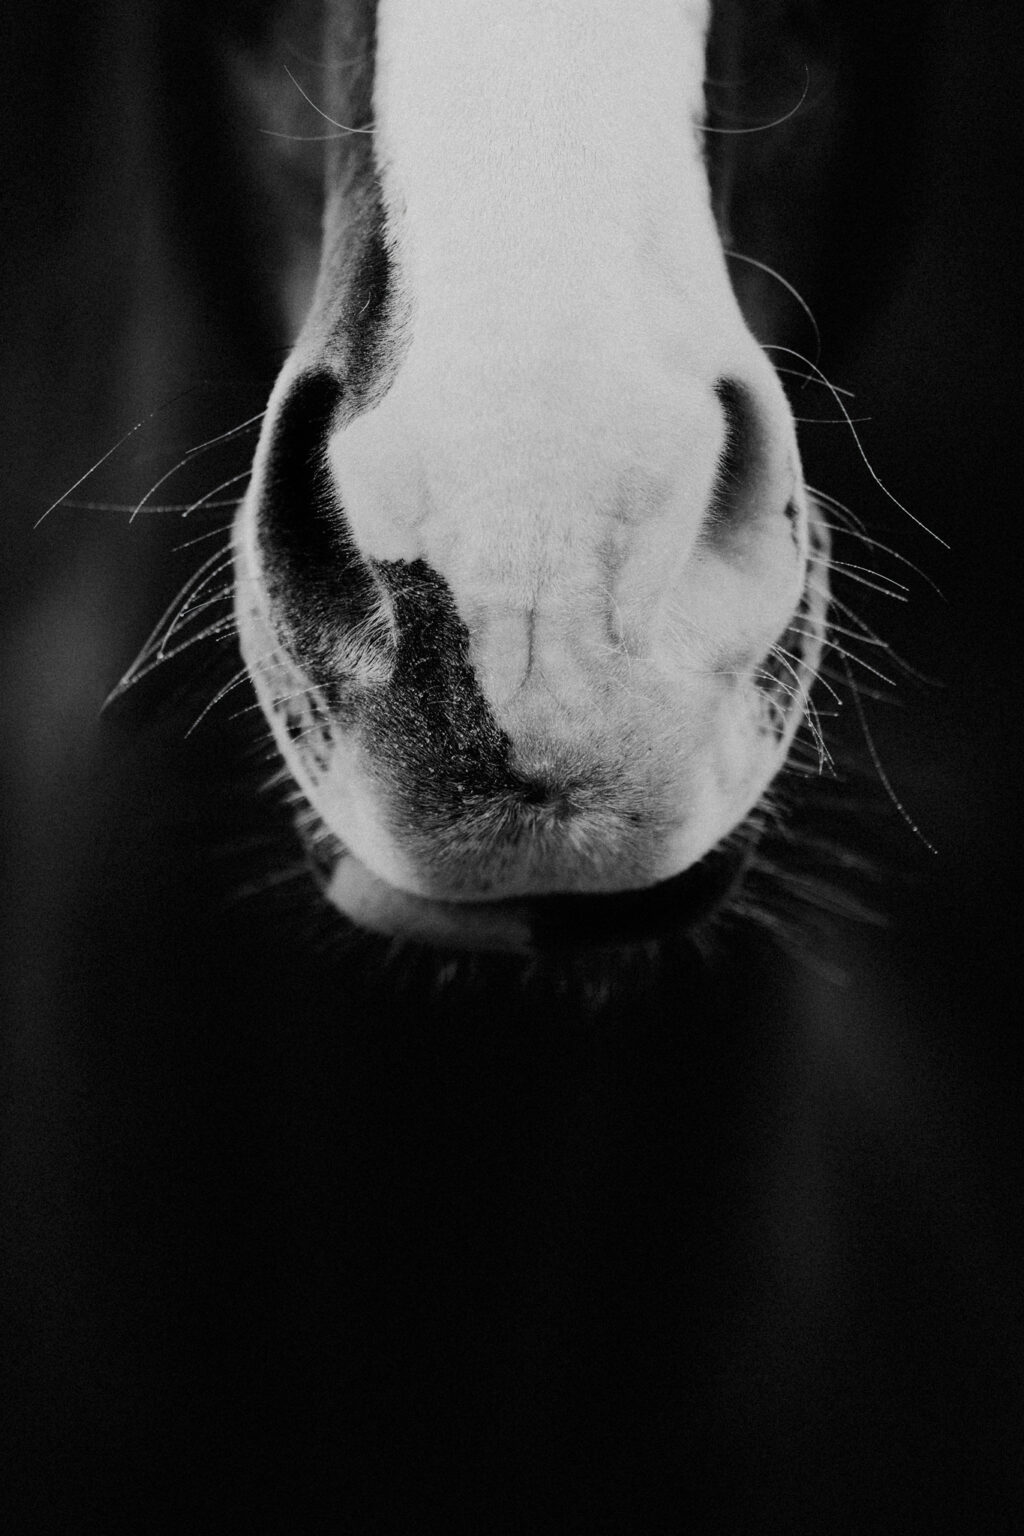 Eine Pferdenase im Detail. Das Bild ist in schwarz weiß gehalten. Fotografiert von Kim Kärger